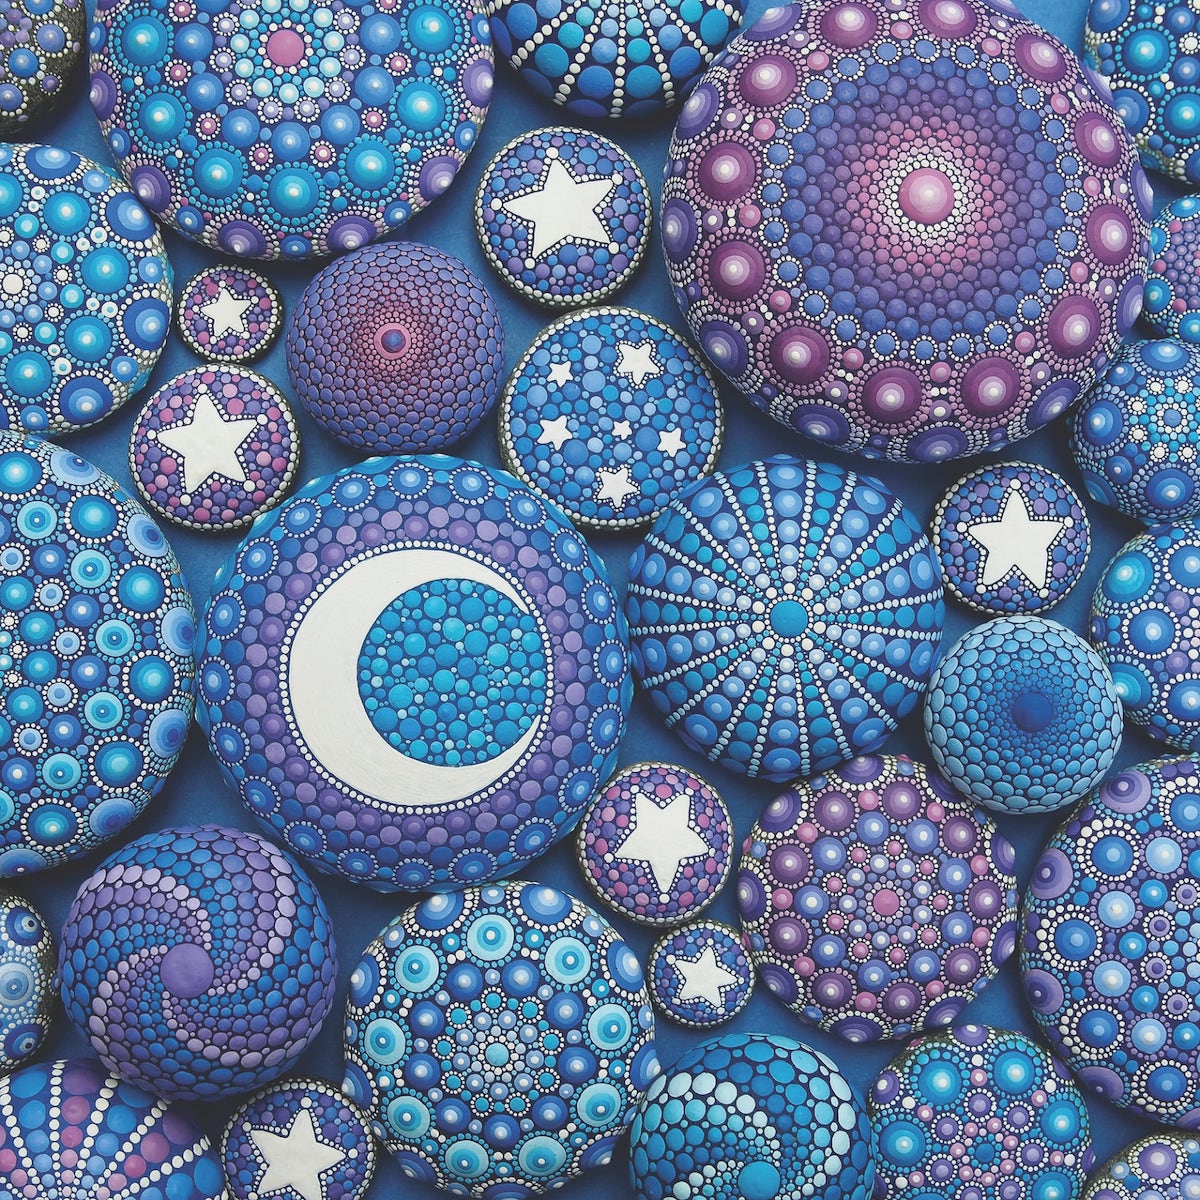 Mandala Stones by Elspeth McLean